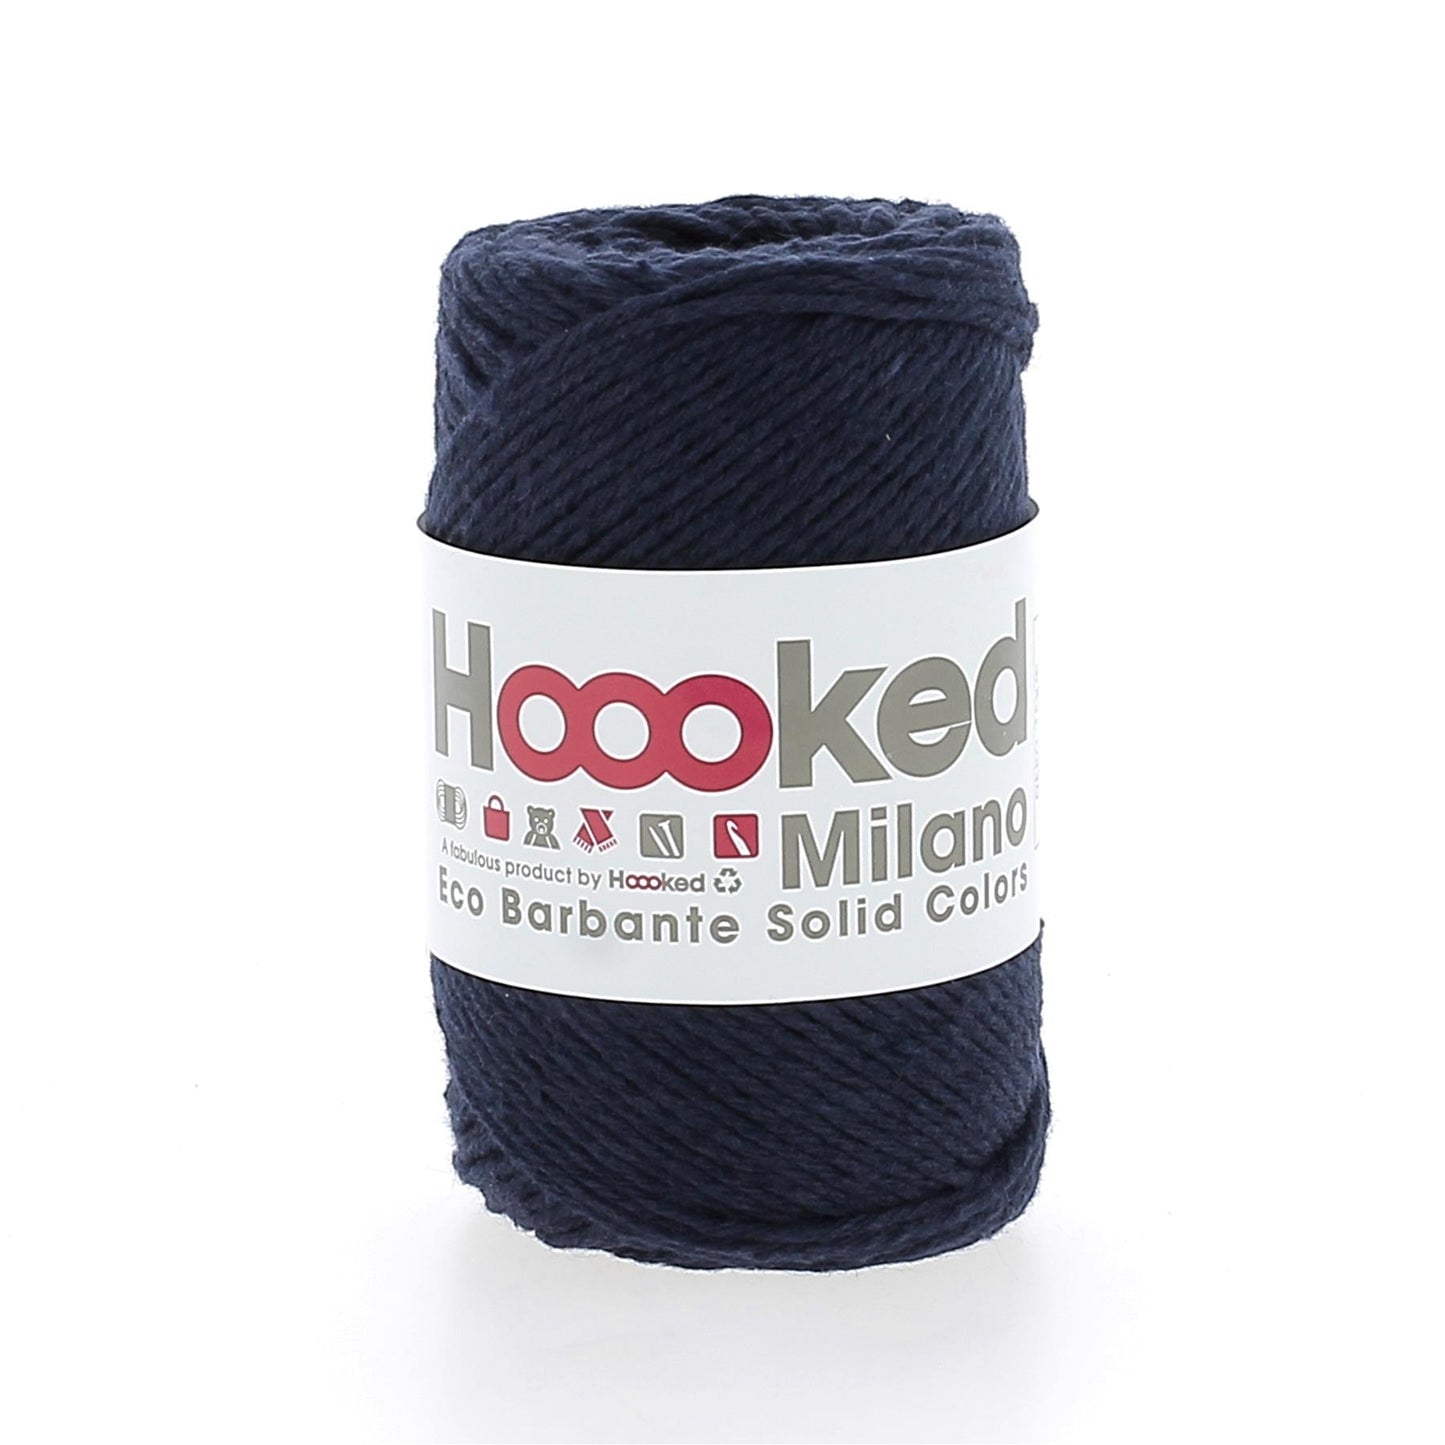 [Hoooked] D904 Eco Barbante Milano Marina Cotton Yarn - 102M, 100g